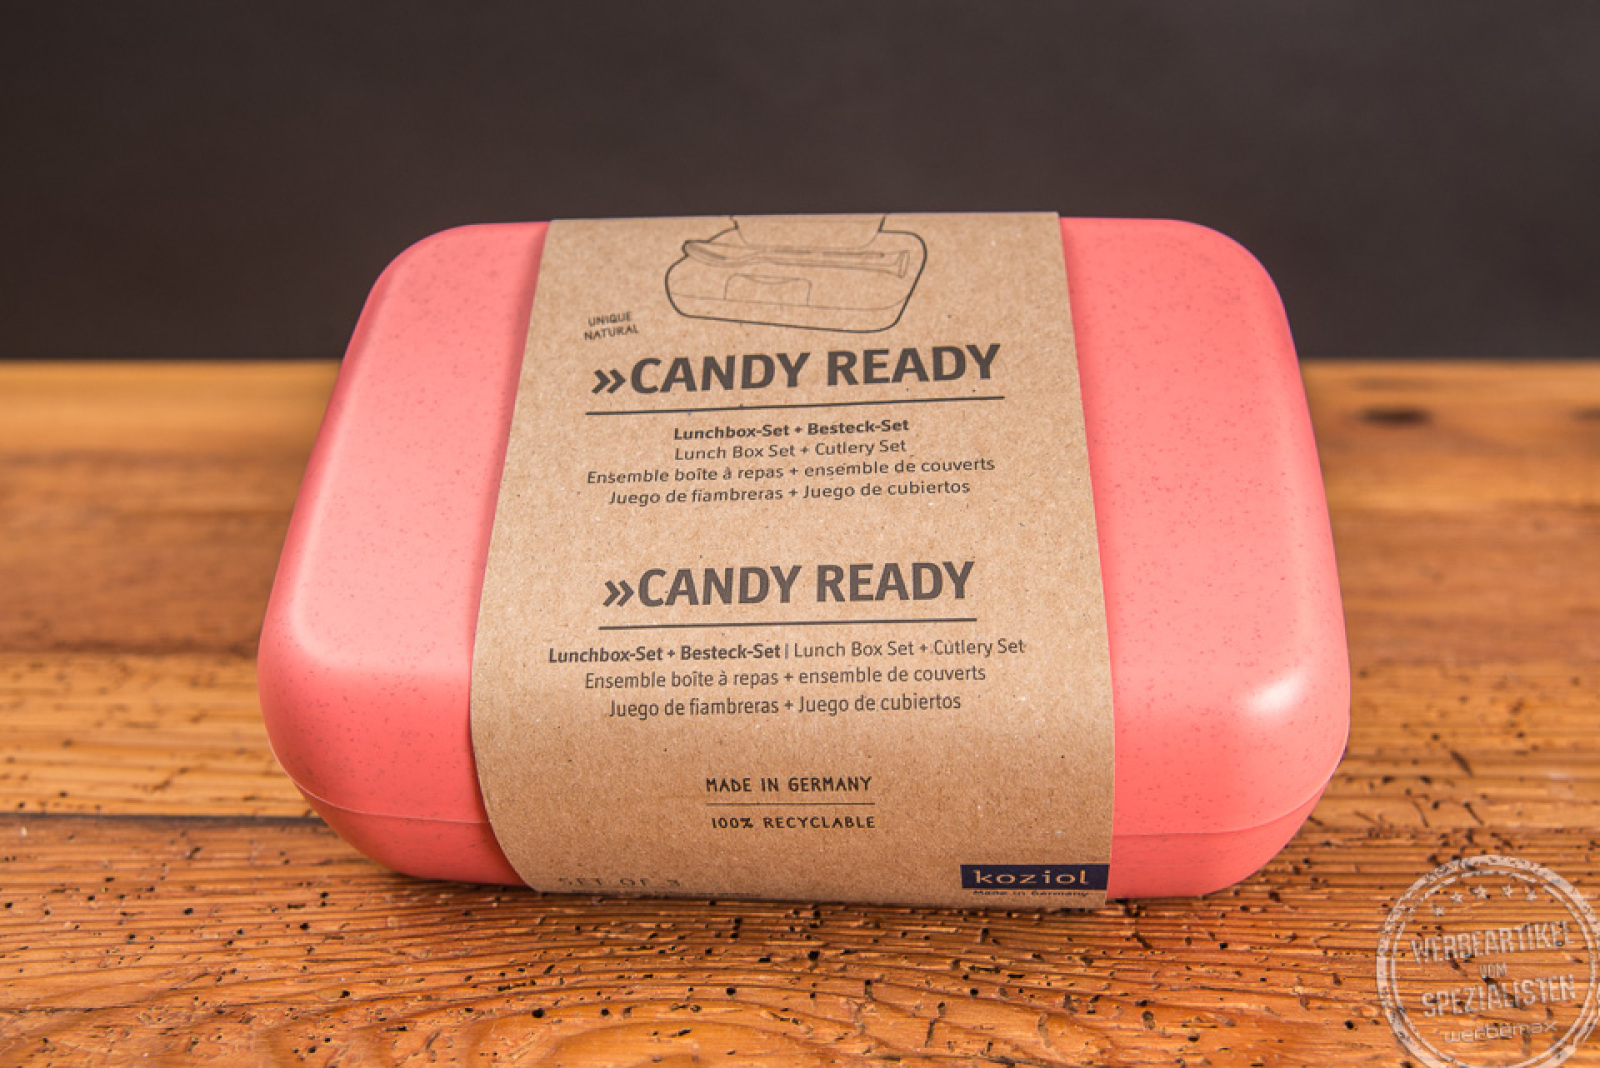 Rote koziol Candy Ready Set Lunchbox mit Papierbanderol verschlossen als Werbeartikel. 